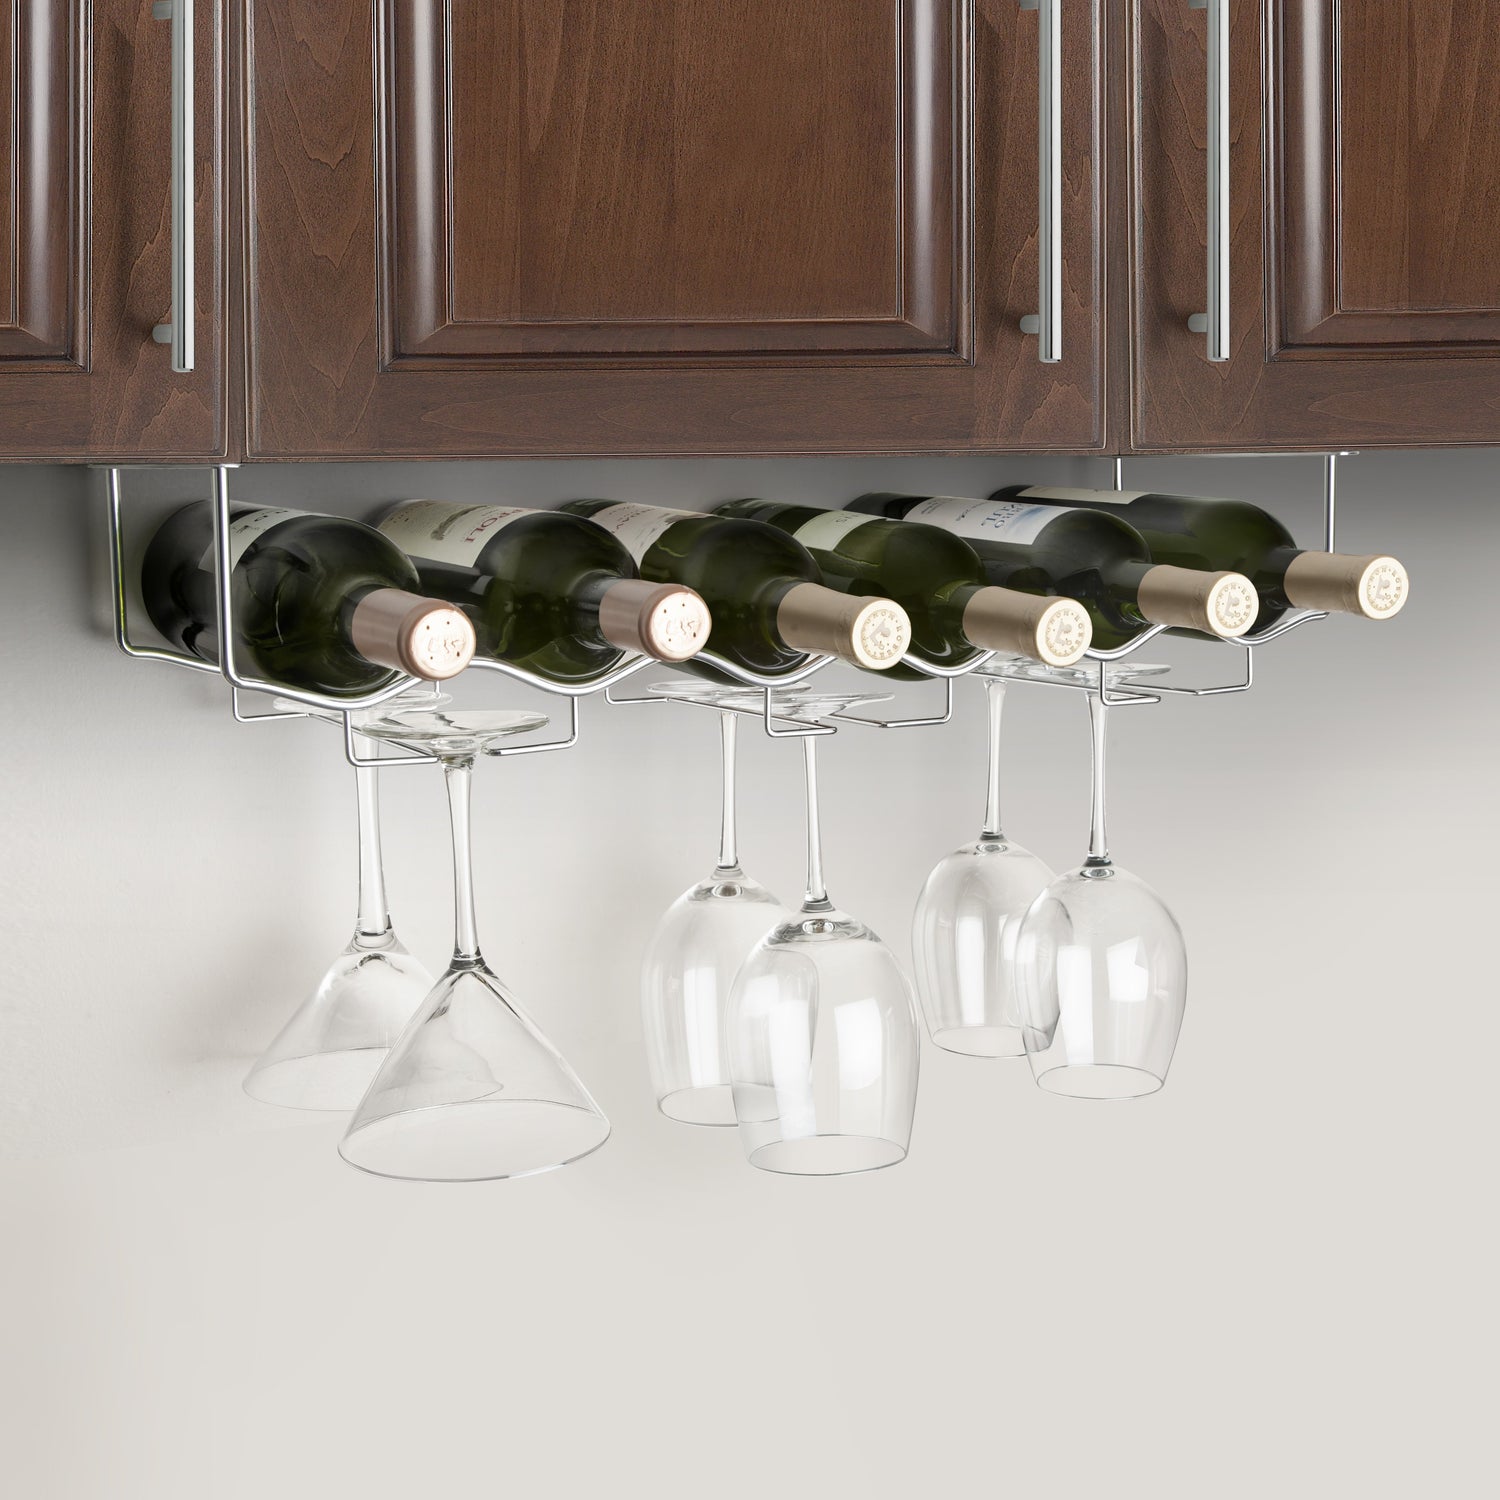 Black) Wallniture Piccola Under Cabinet Wine Rack And Wine Glass Holder  Bottle Organiser And Stemware Storage With Bottle Holder Metal Black 